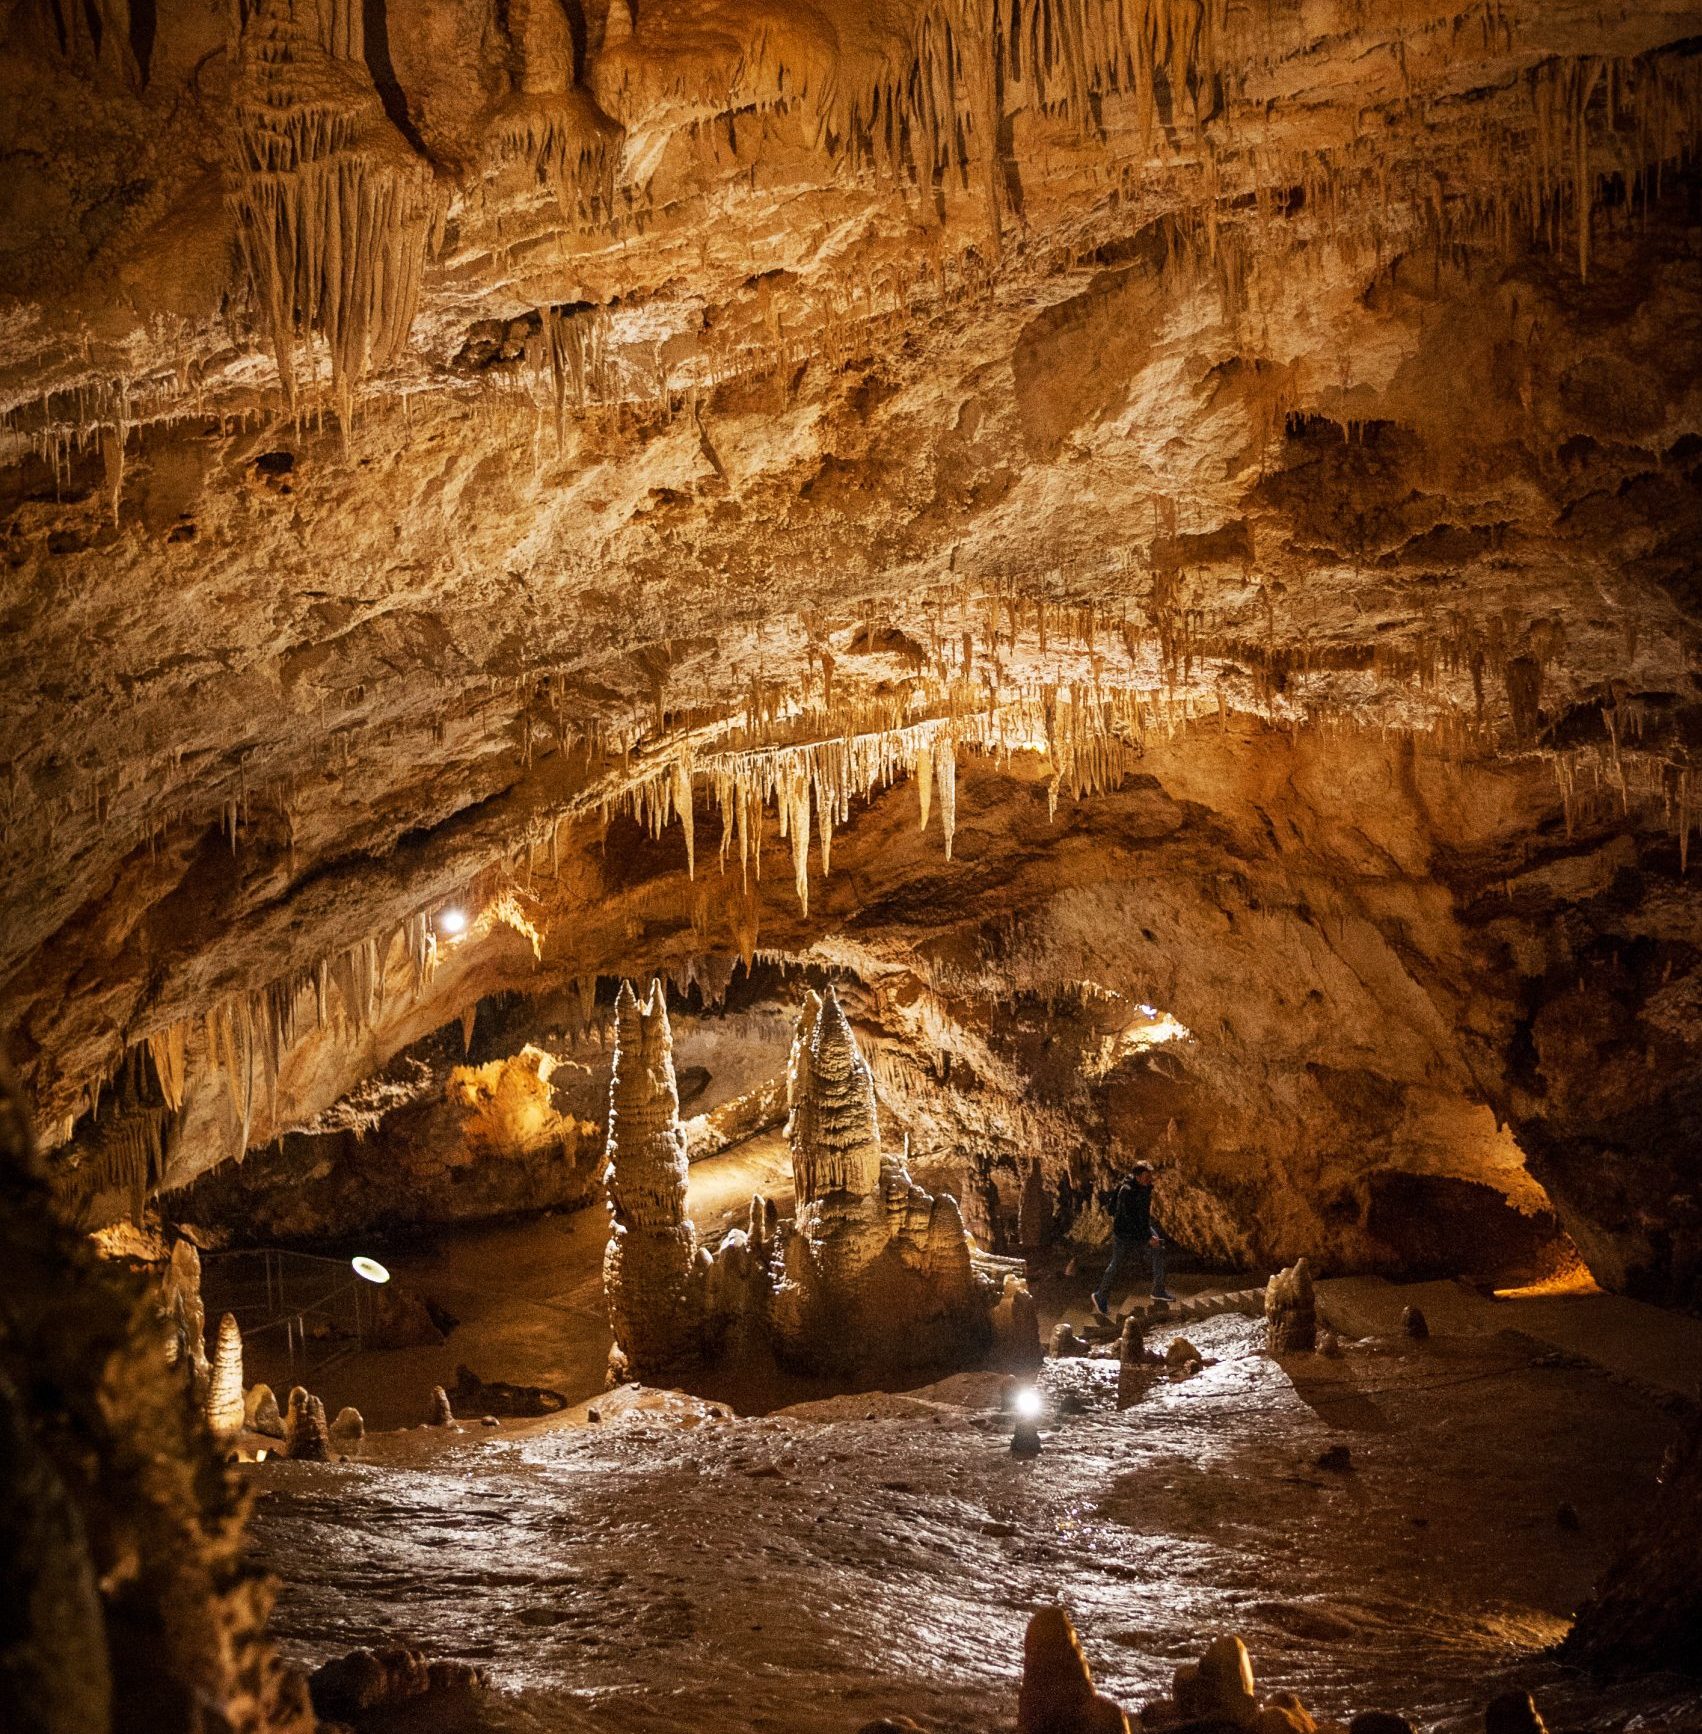 Lipa cave in Cetinje